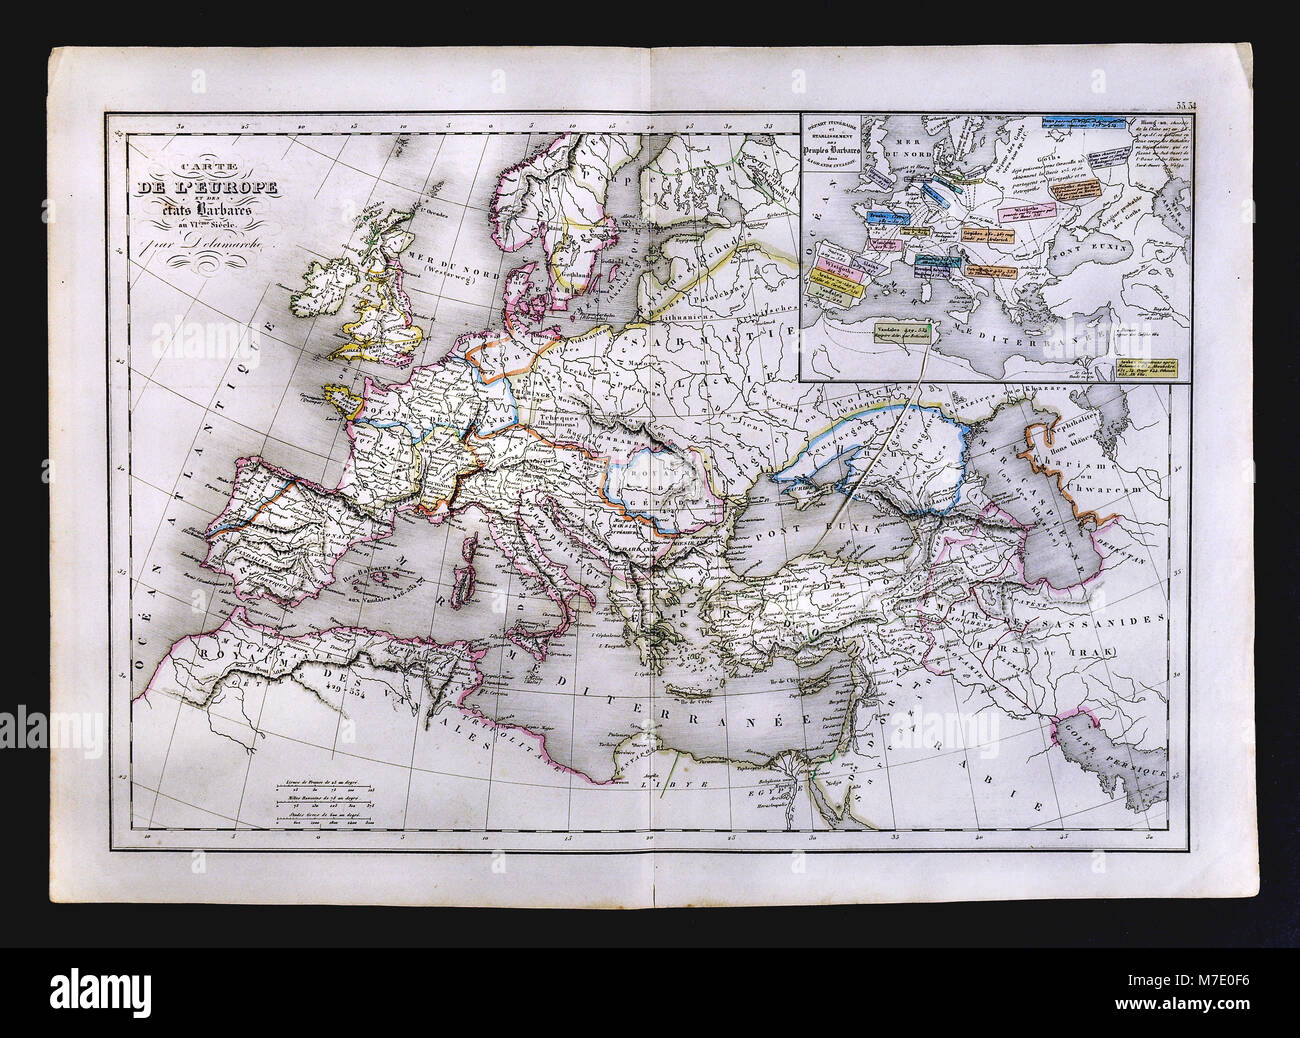 Delamarche 1858 Carte historique de l'Europe montrant les États barbares au 6ème siècle Banque D'Images